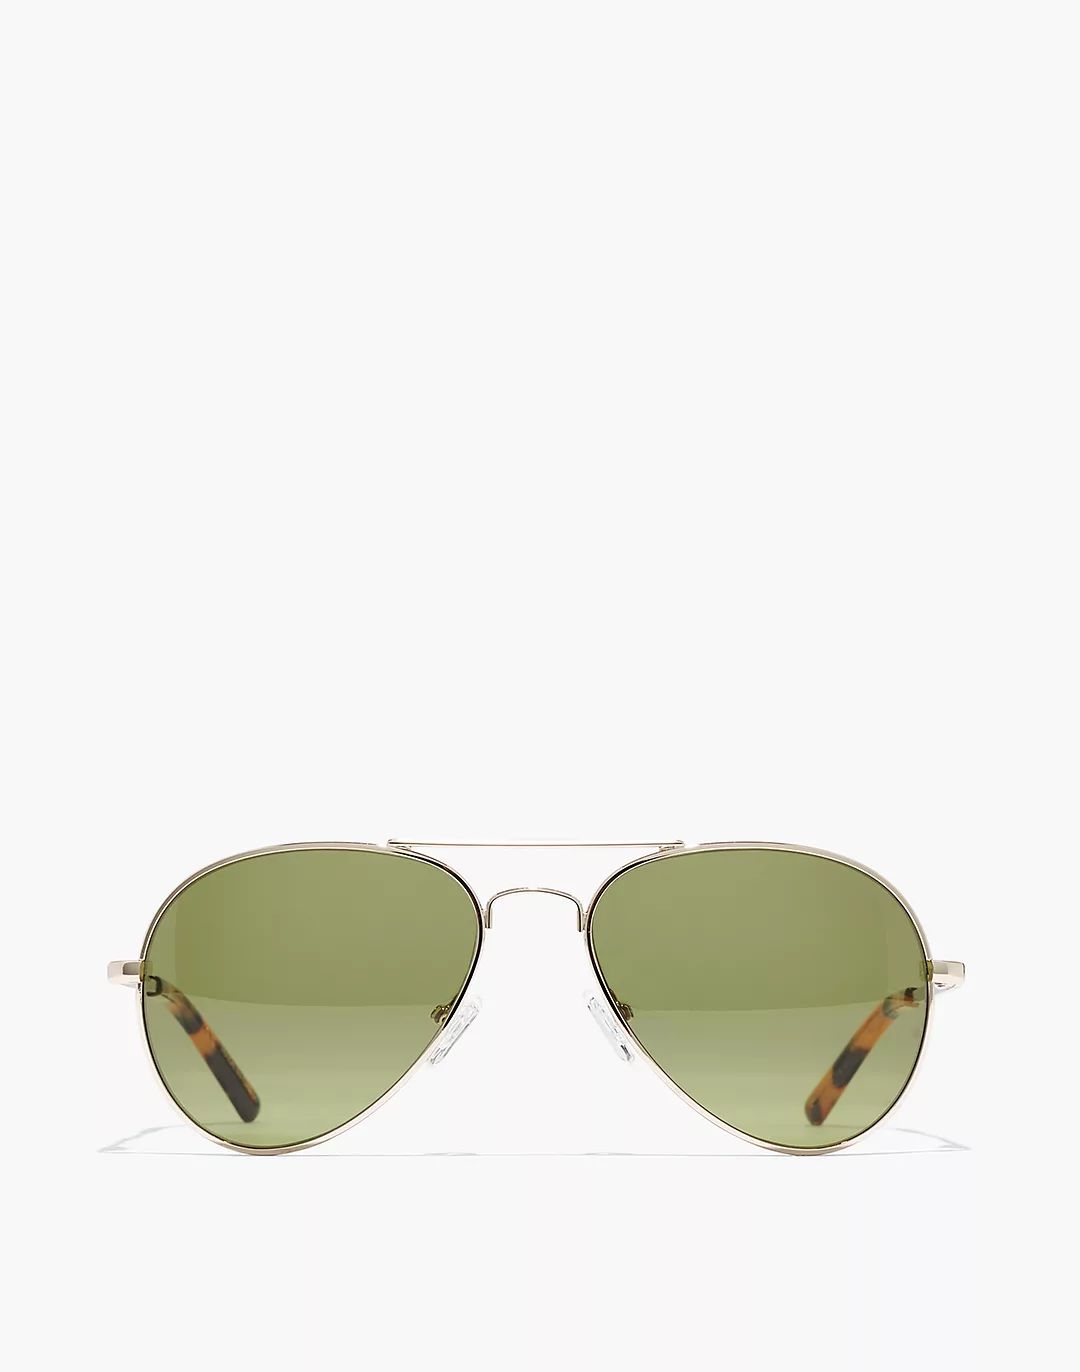 Chelston Aviator Sunglasses | Madewell